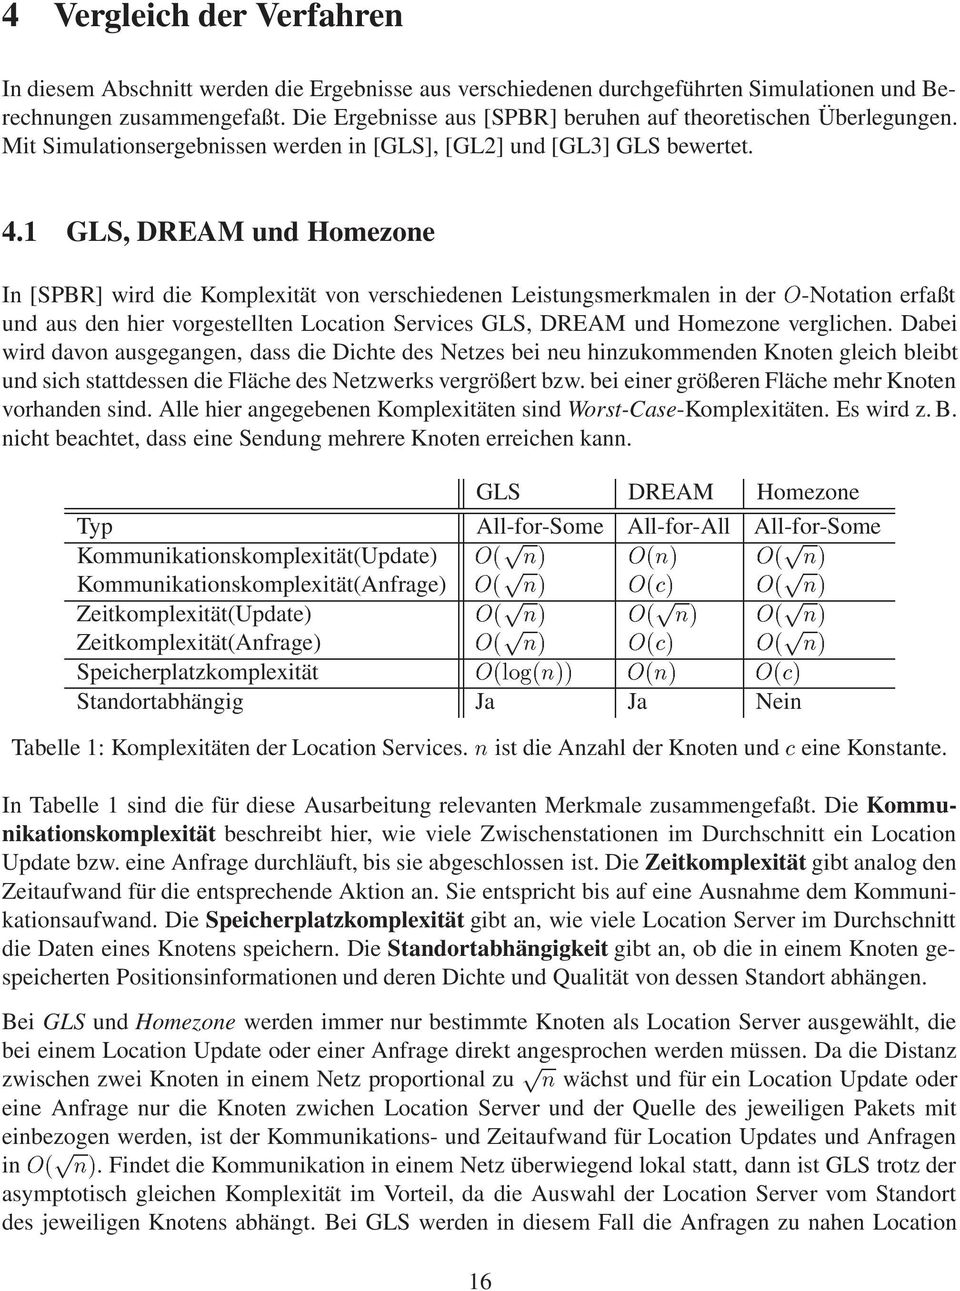 1 GLS, DREAM und Homezone In [SPBR] wird die Komplexität von verschiedenen Leistungsmerkmalen in der Ç-Notation erfaßt und aus den hier vorgestellten Location Services GLS, DREAM und Homezone